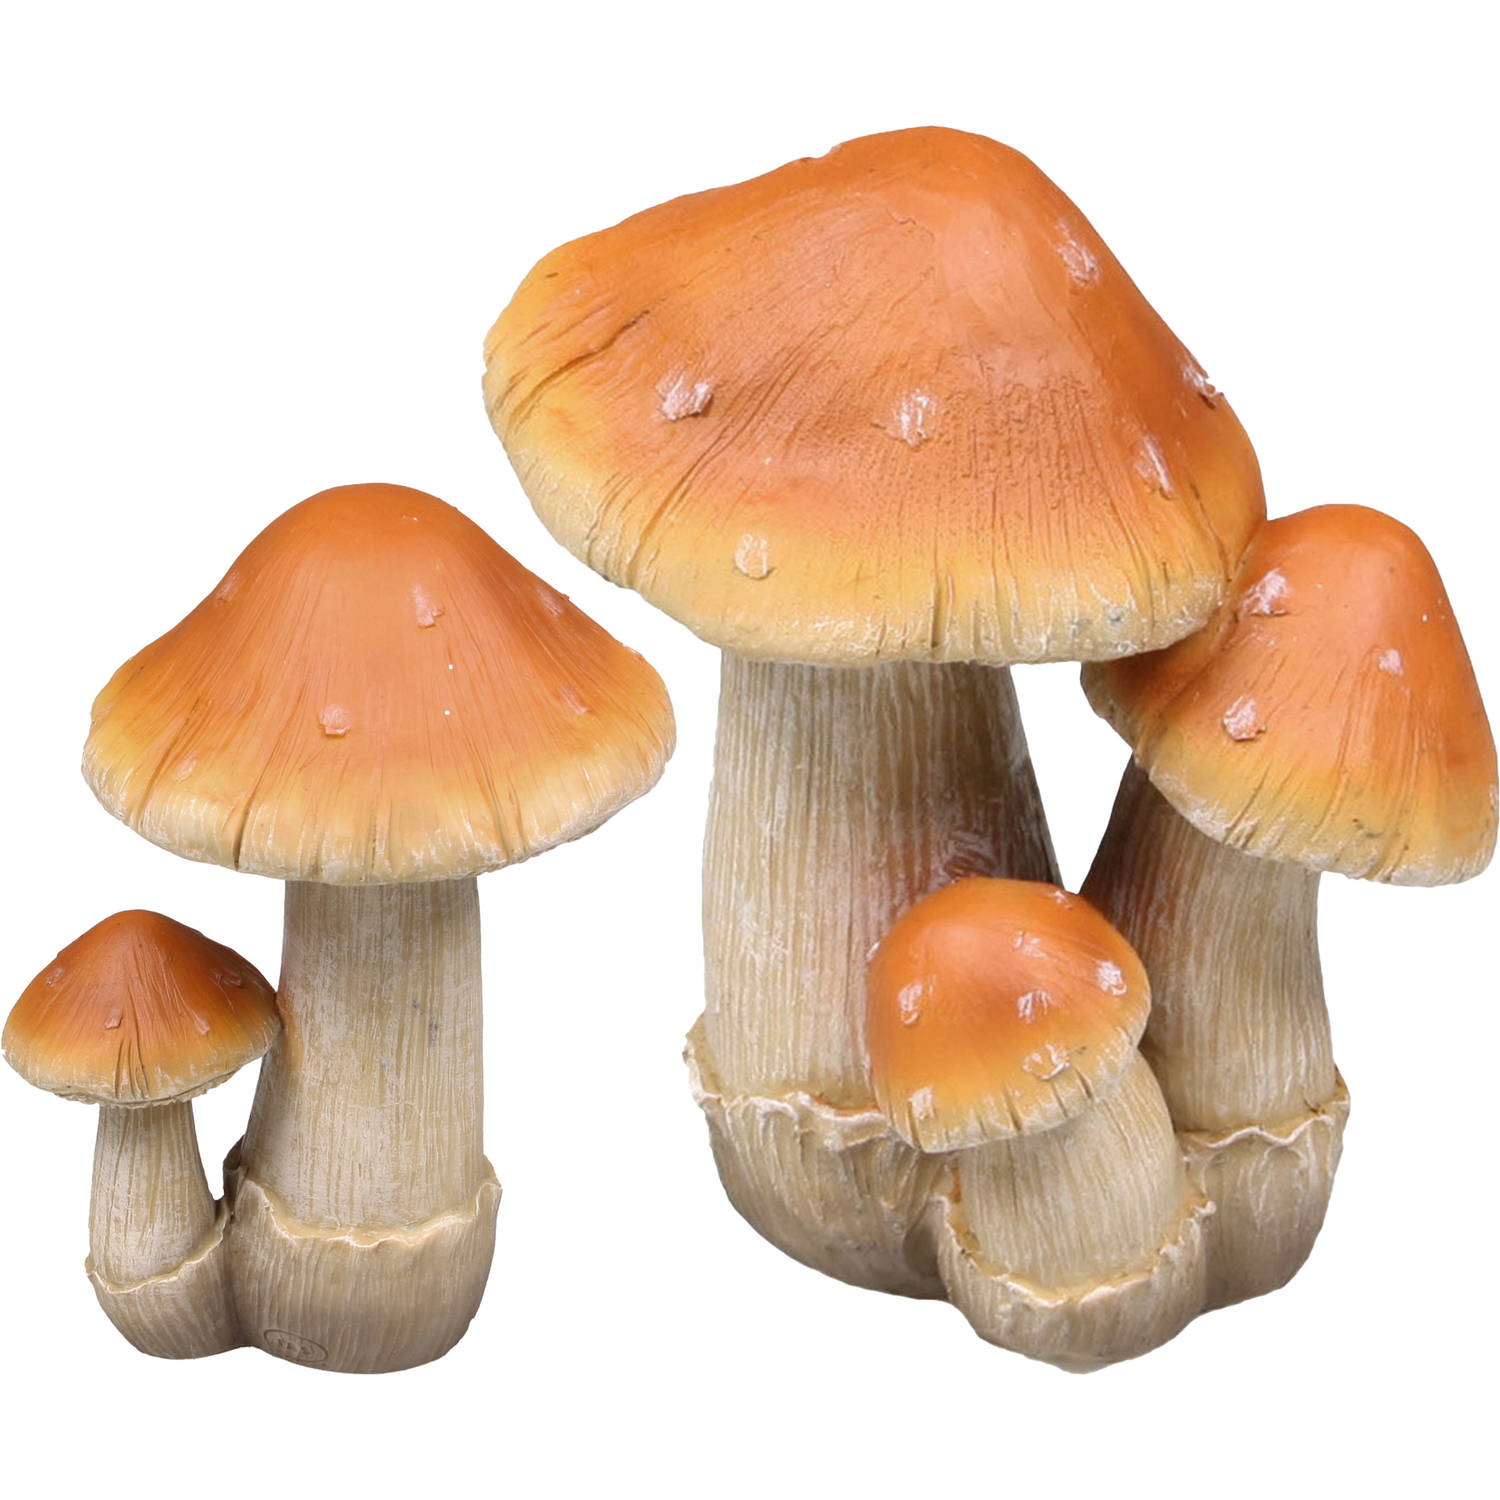 Decoratie paddenstoelen setje met 2x boleet paddenstoelen herfst thema Tuinbeelden